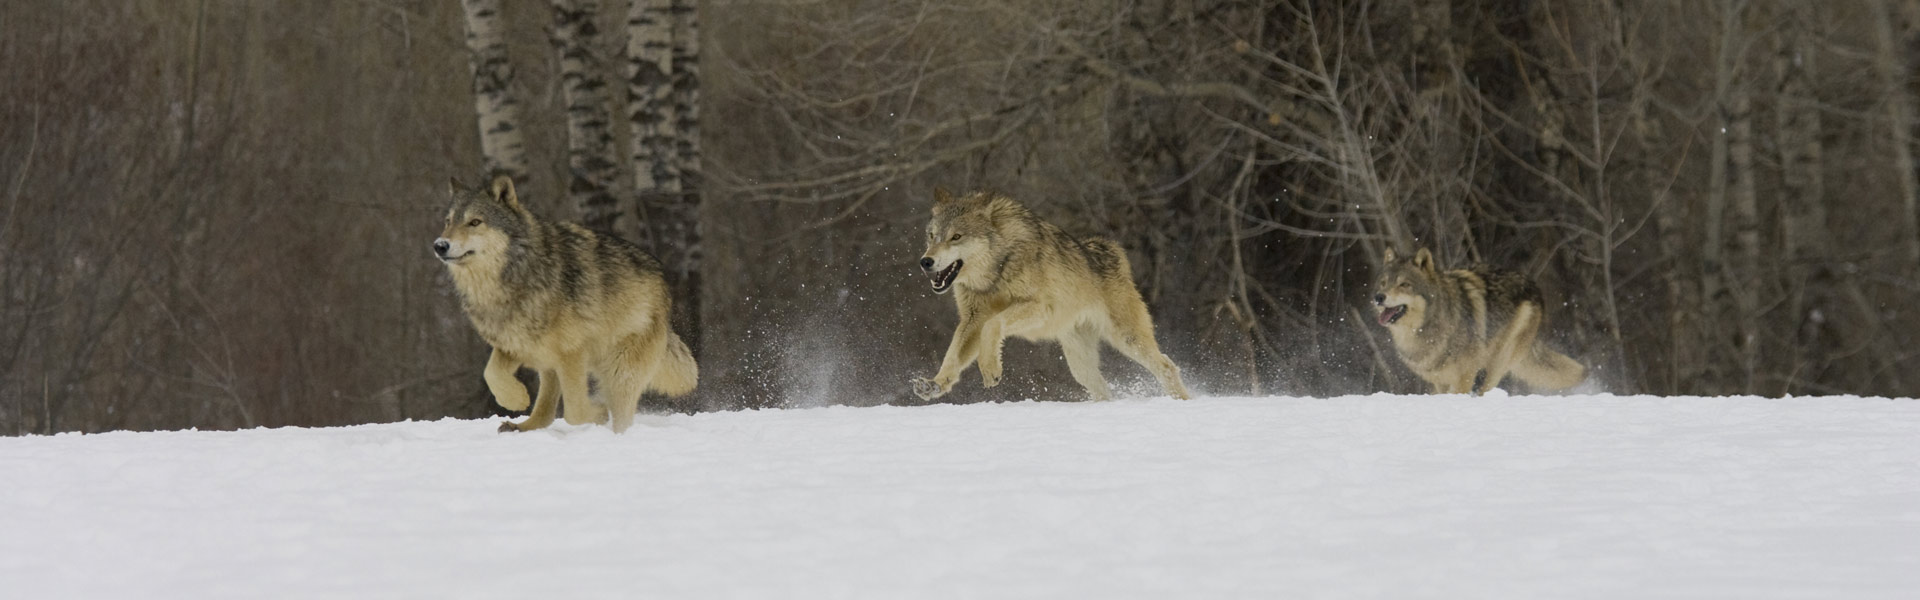 Wolves running